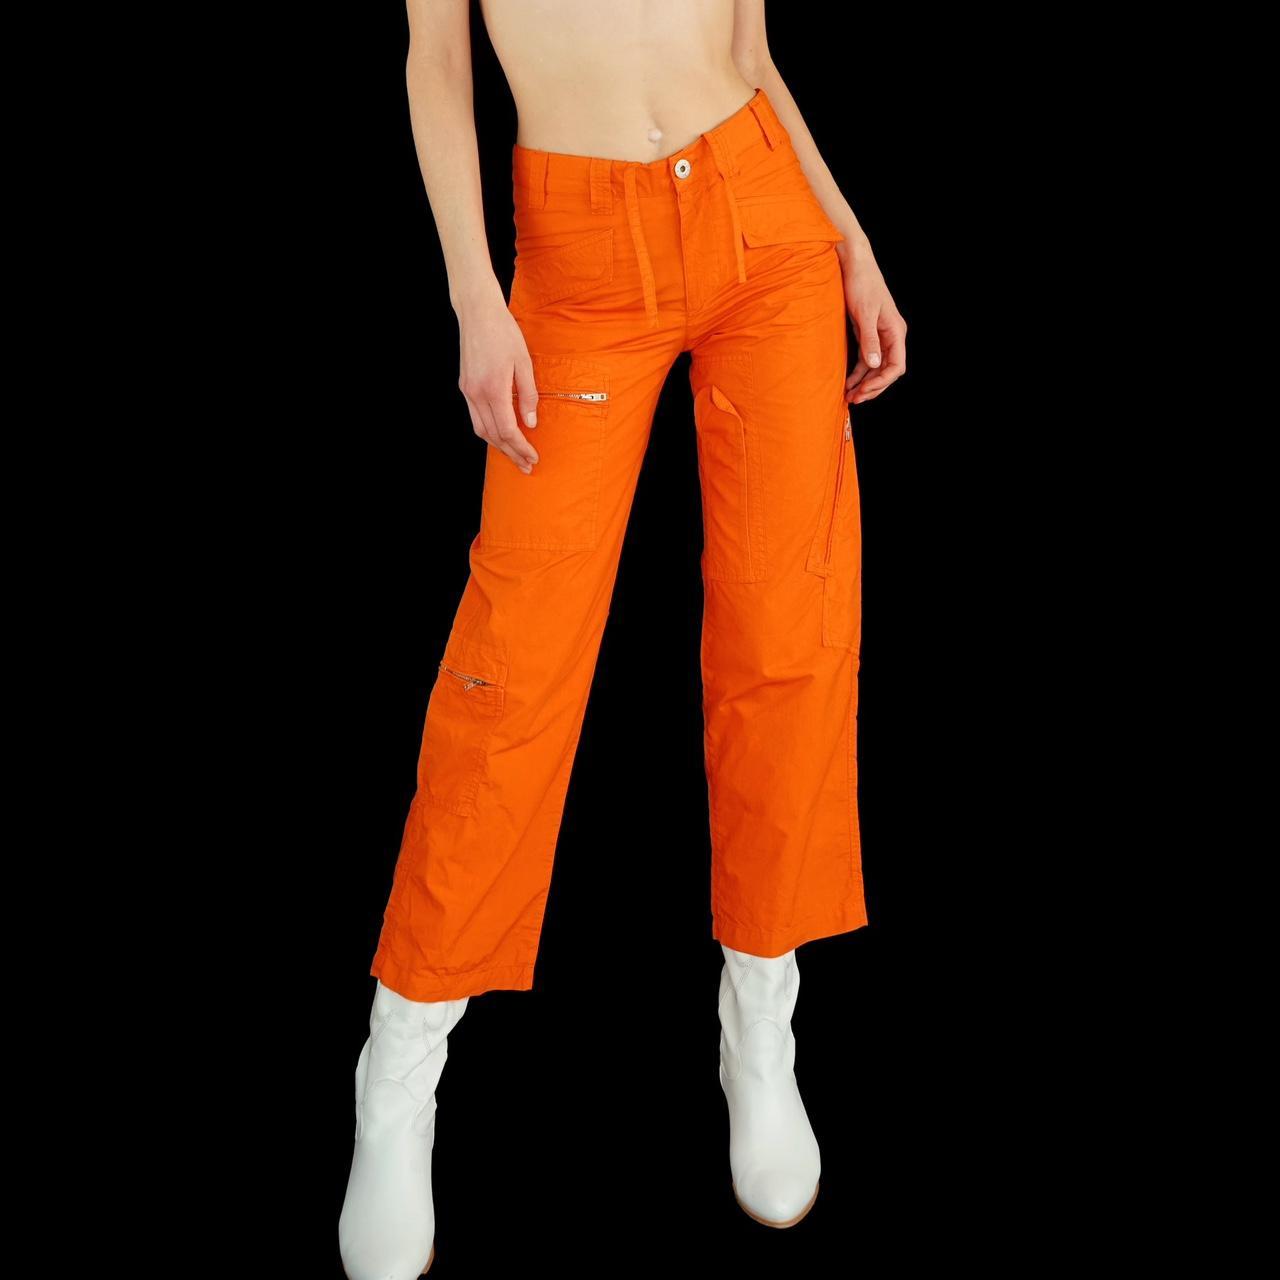 Vintage Y2K Italian orange cargo pants., Made in